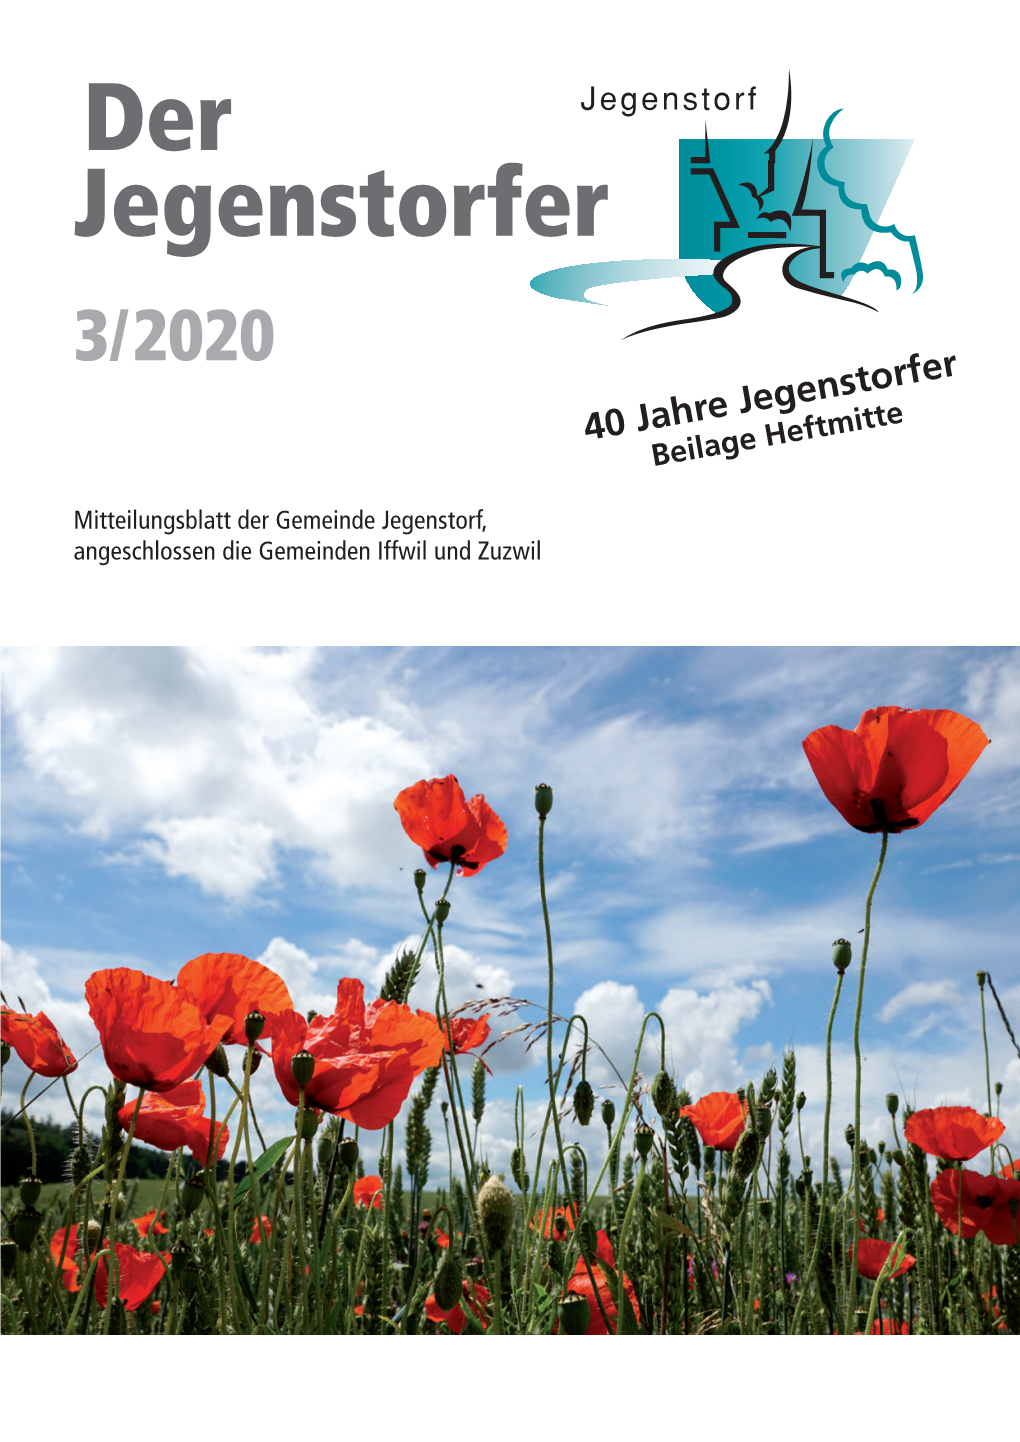 3/2020 40 Jahre Jegenstorfer Beilage Heftmitte